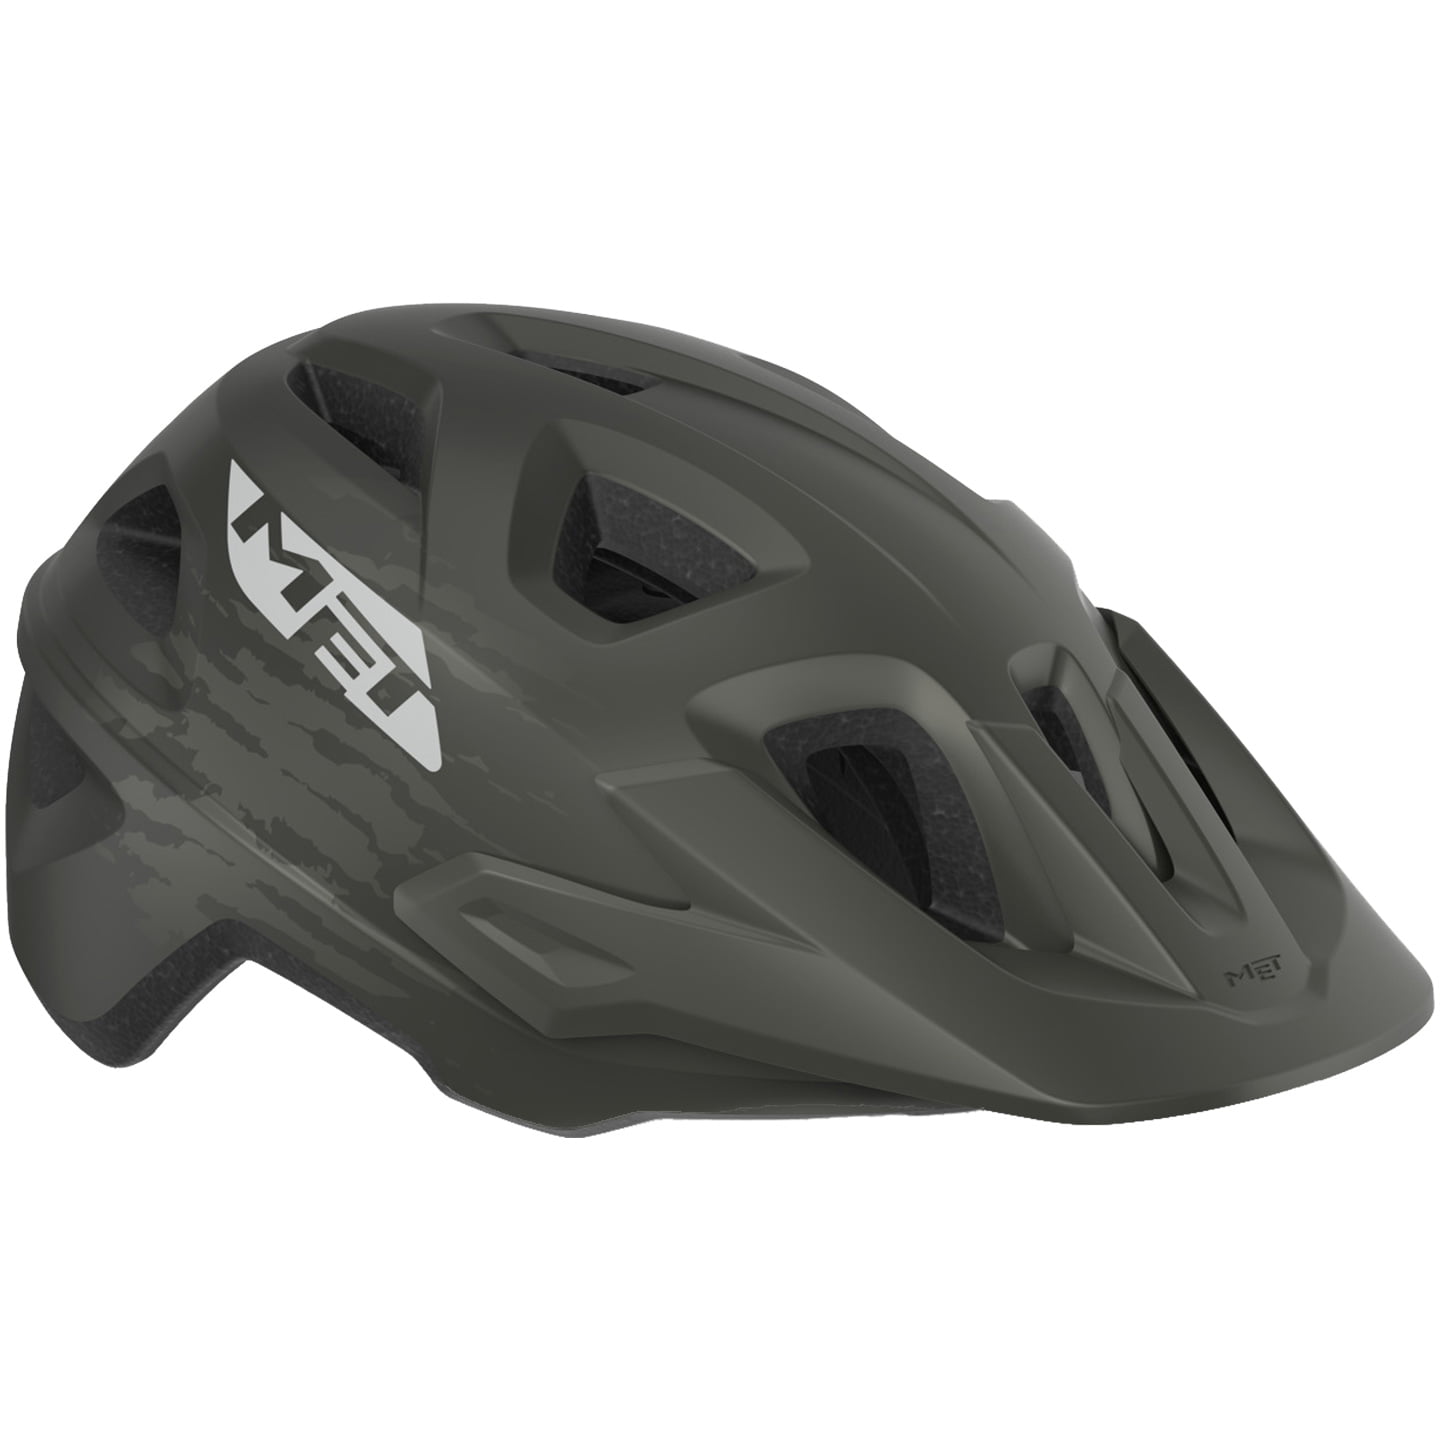 MET Echo MTB Helmet, Unisex (women / men), size S-M